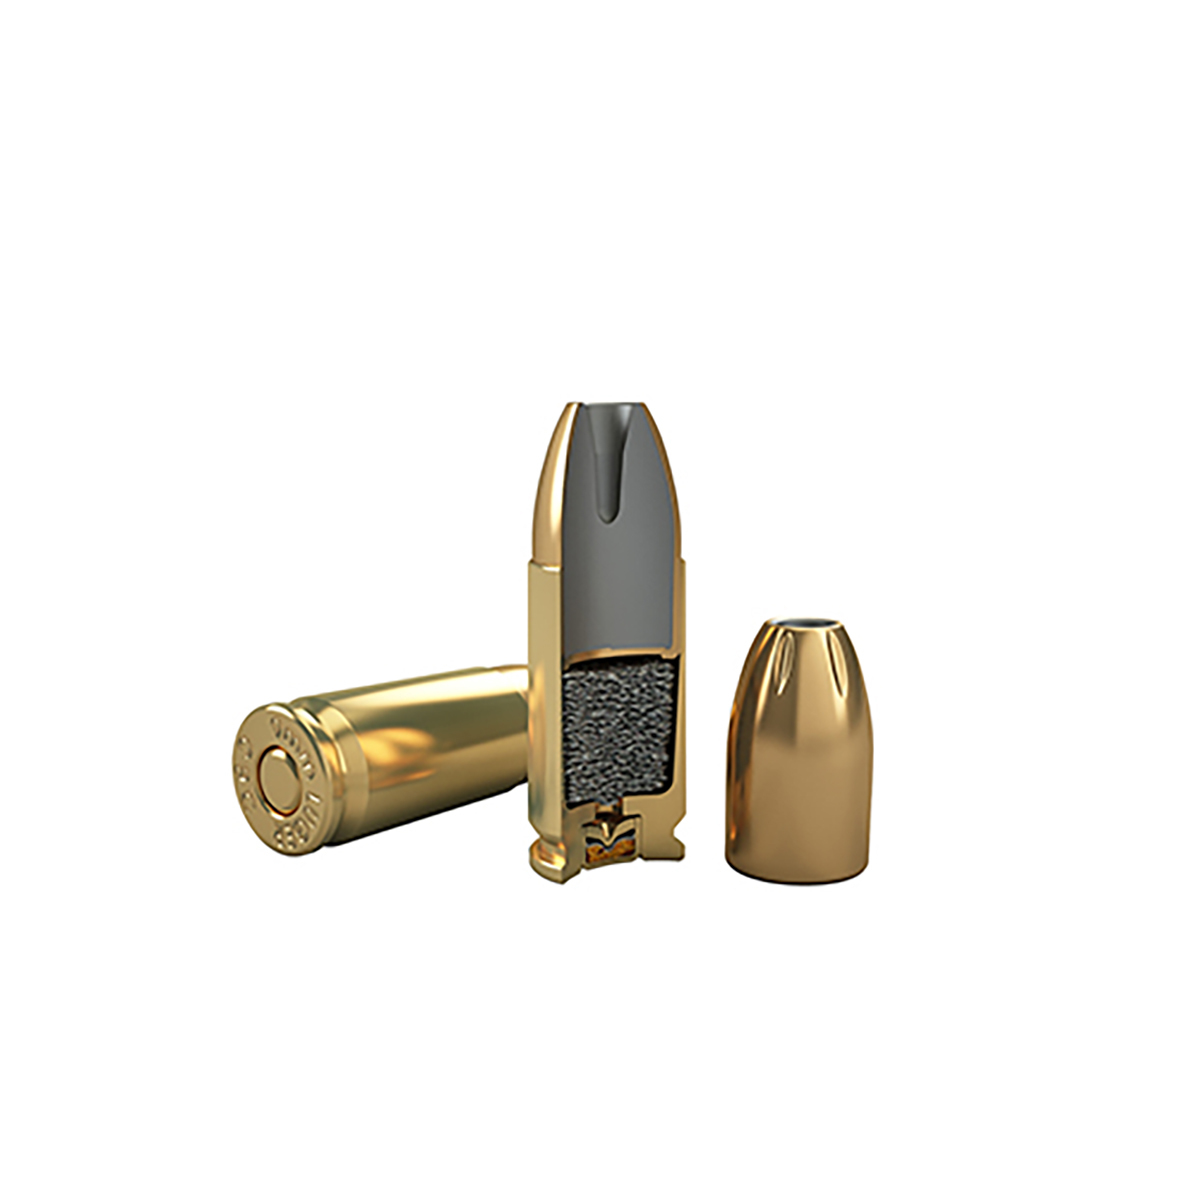 Munição CBC Gold Hex 9mm Luger EXPO +P+ 115gr